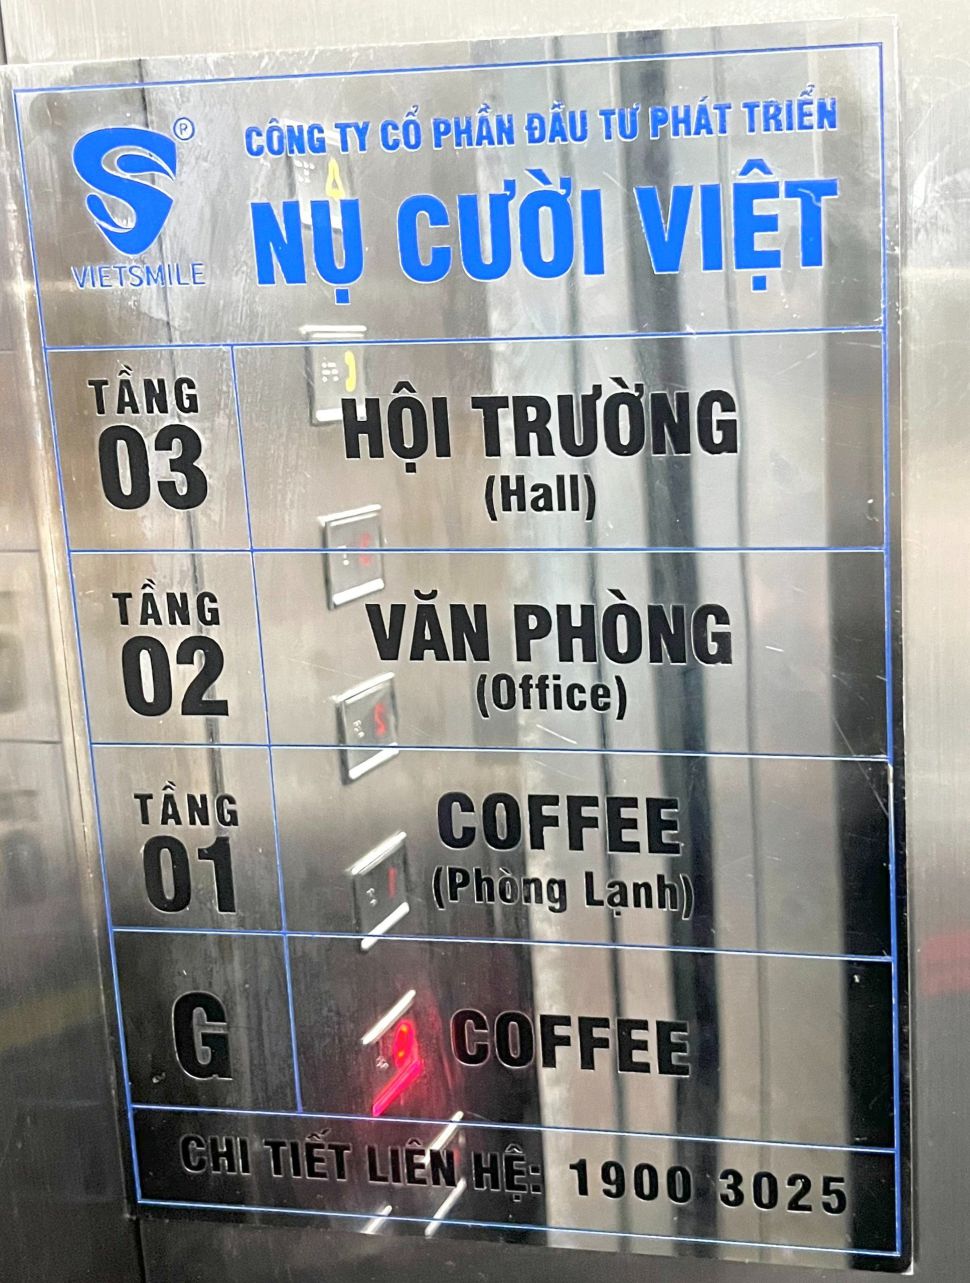 Cho thuê phòng họp đầy đủ thiết bị tại Biên Hòa – Đồng Nai